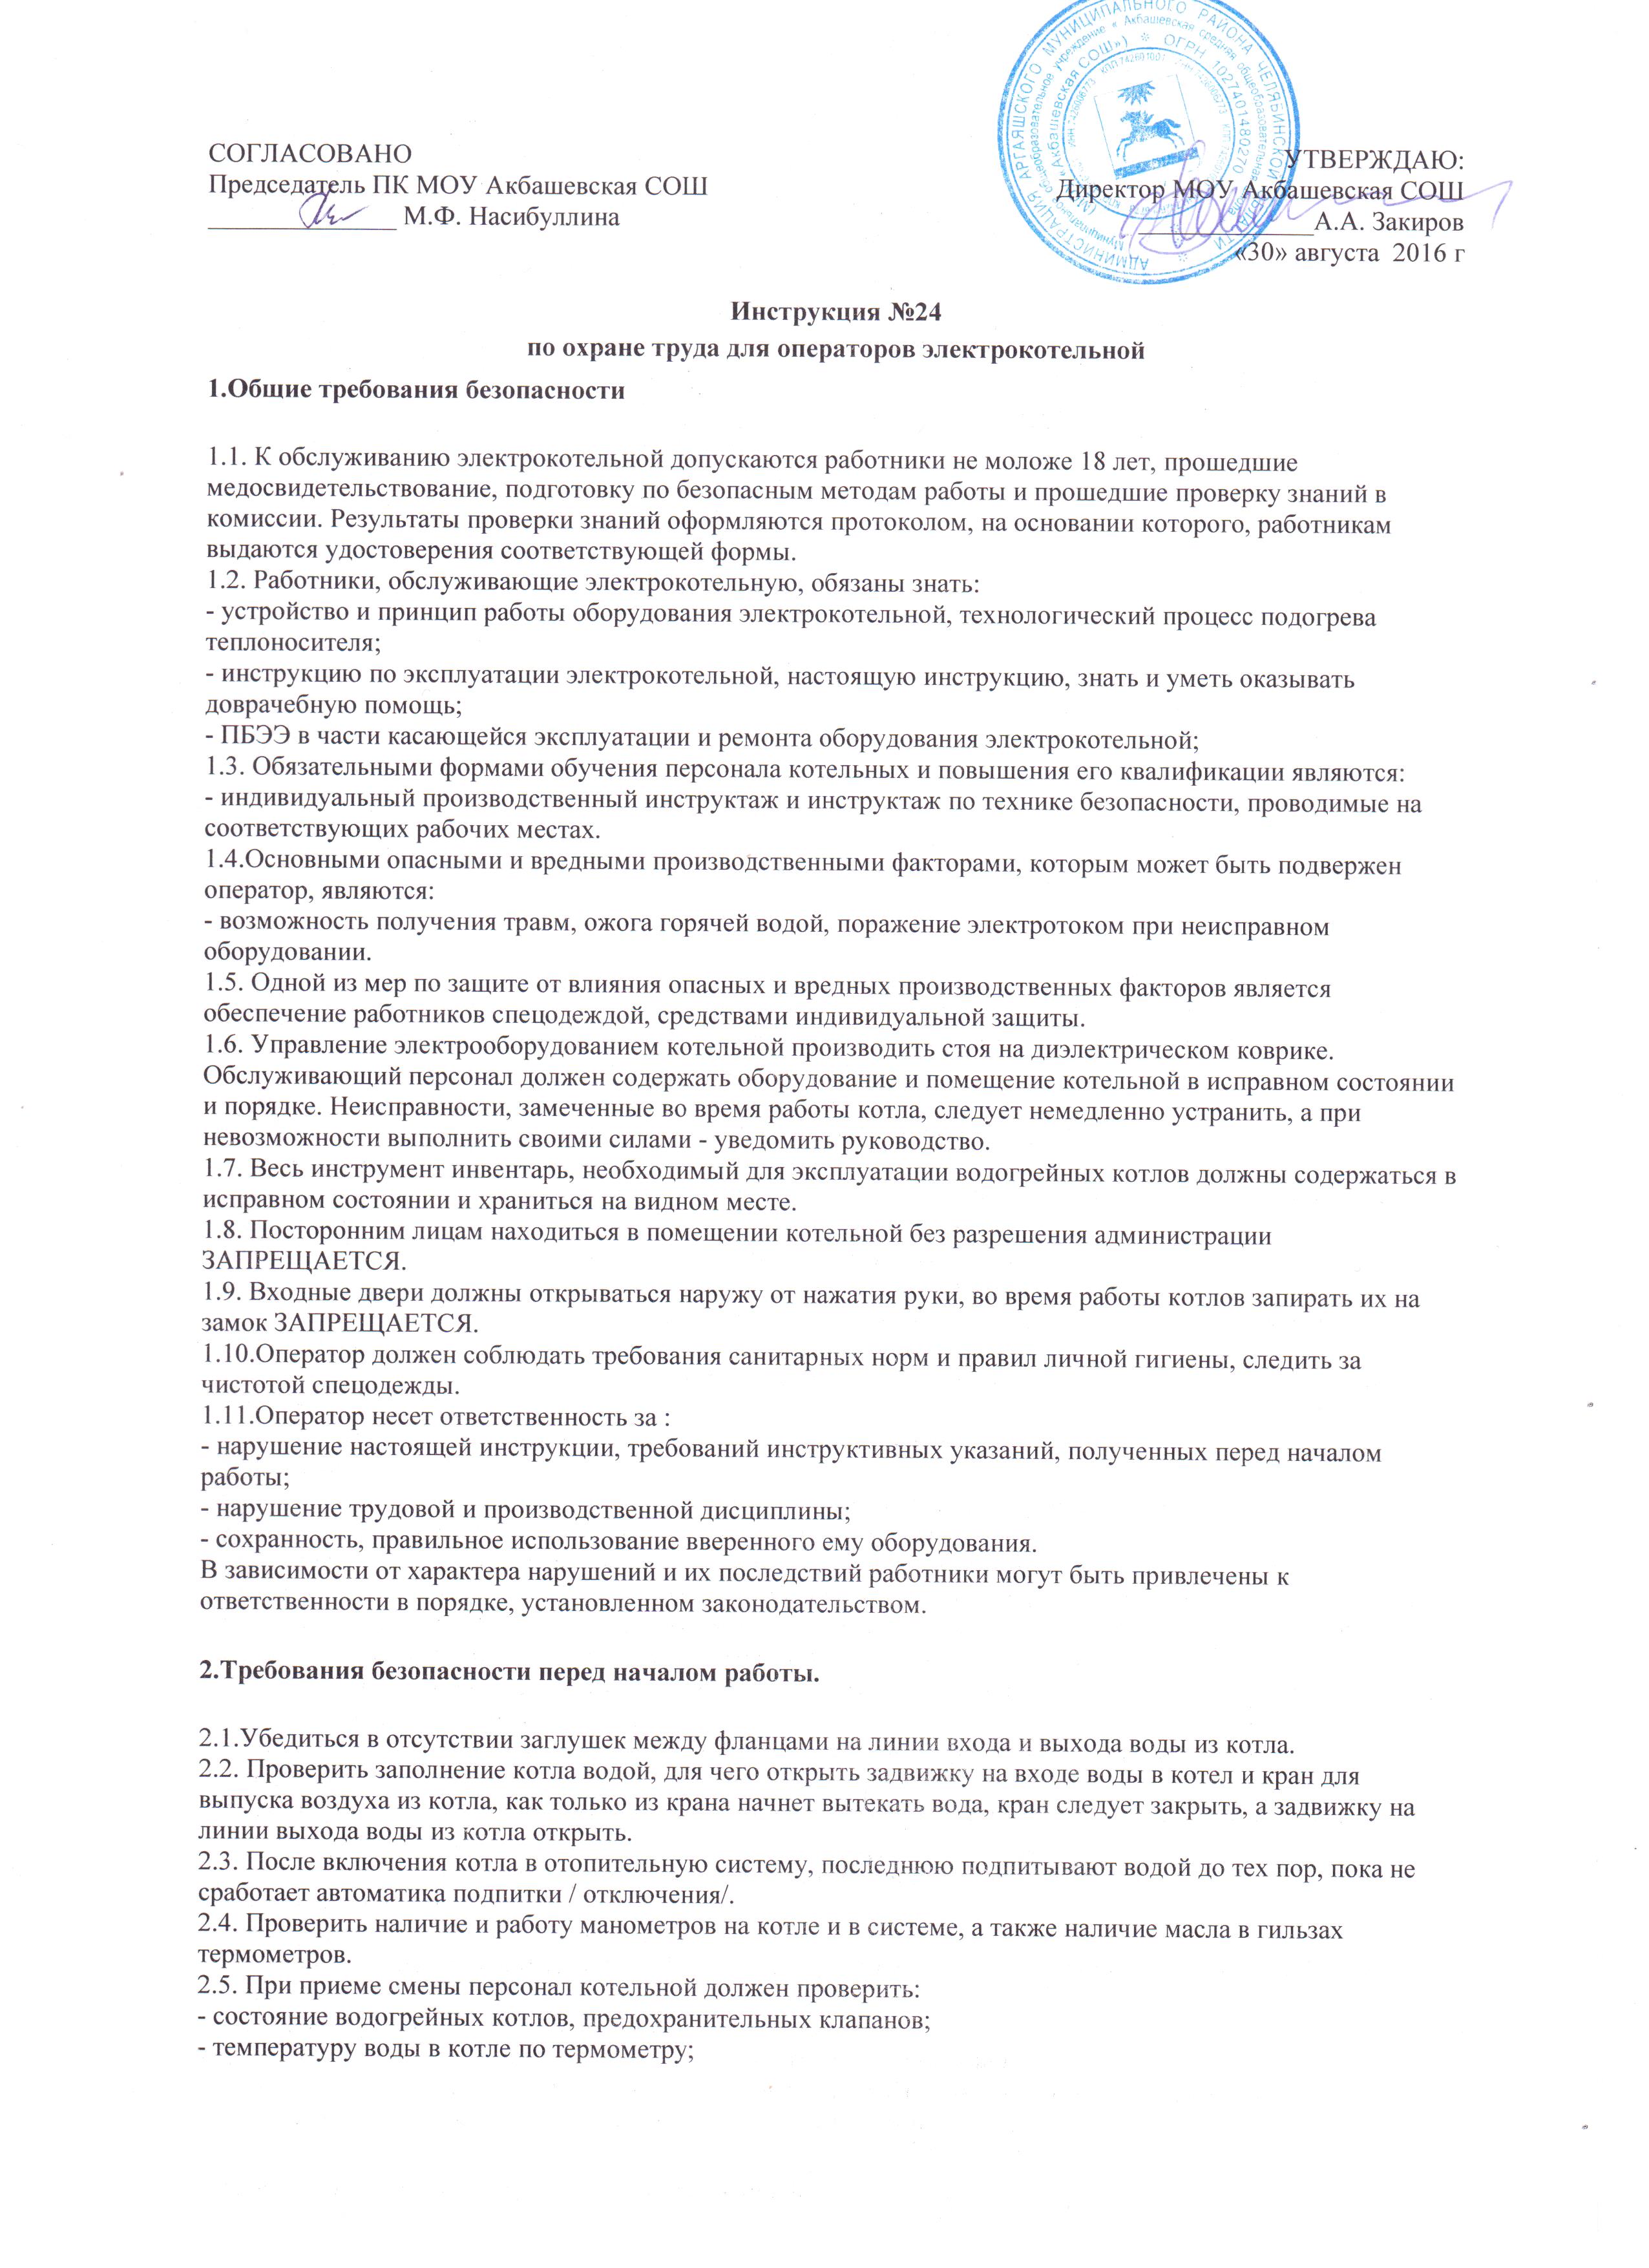 Инструкция по охране труда для учителя русского языка и литературы